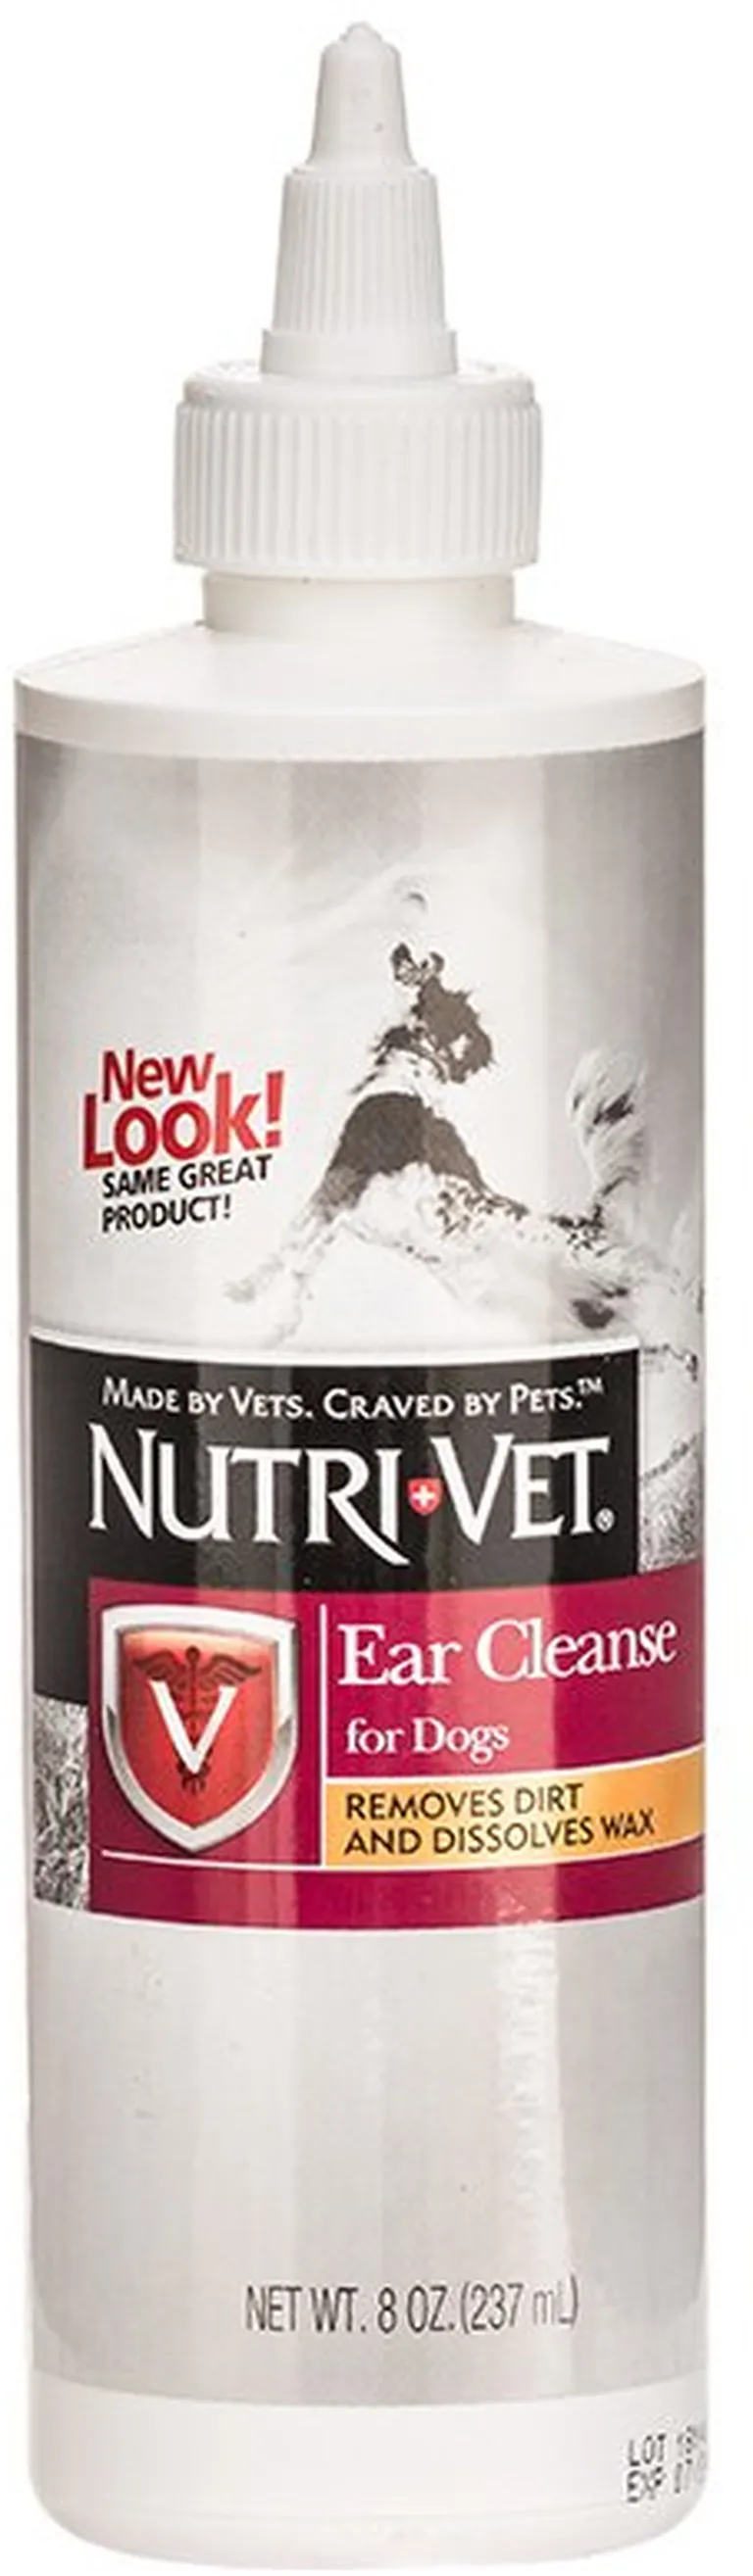 Nutri-Vet Ear Cleanse for Dogs Photo 1